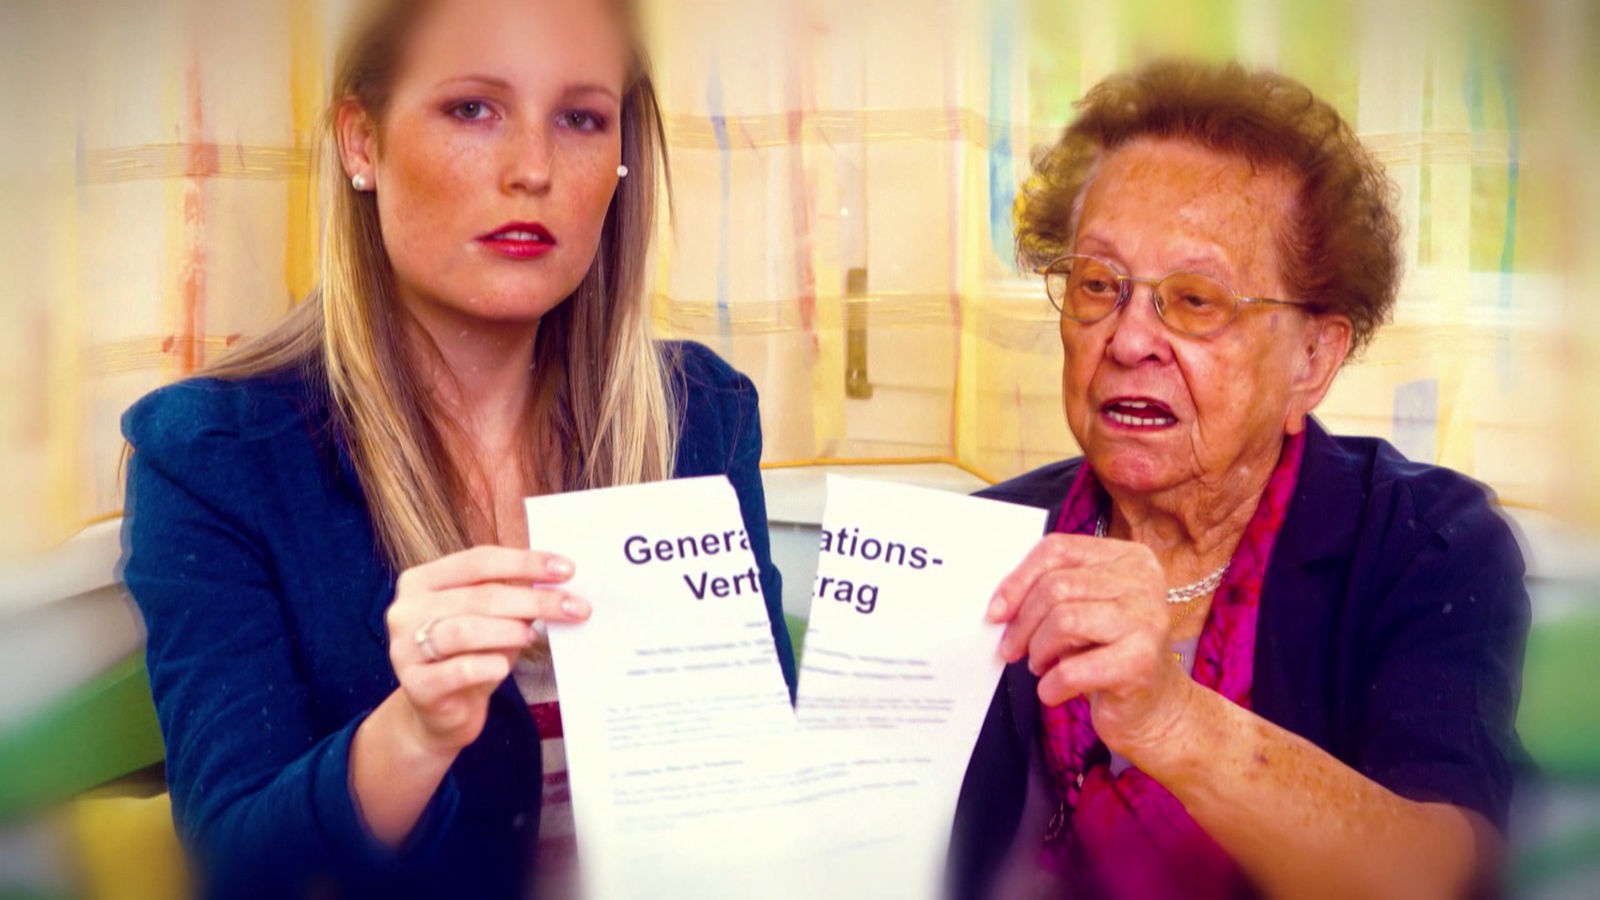 Junge Frau und ältere Frau nebeneinander; beide halten ein stark eingerissenes Papier auf dem 'Generationenvertrag' steht.